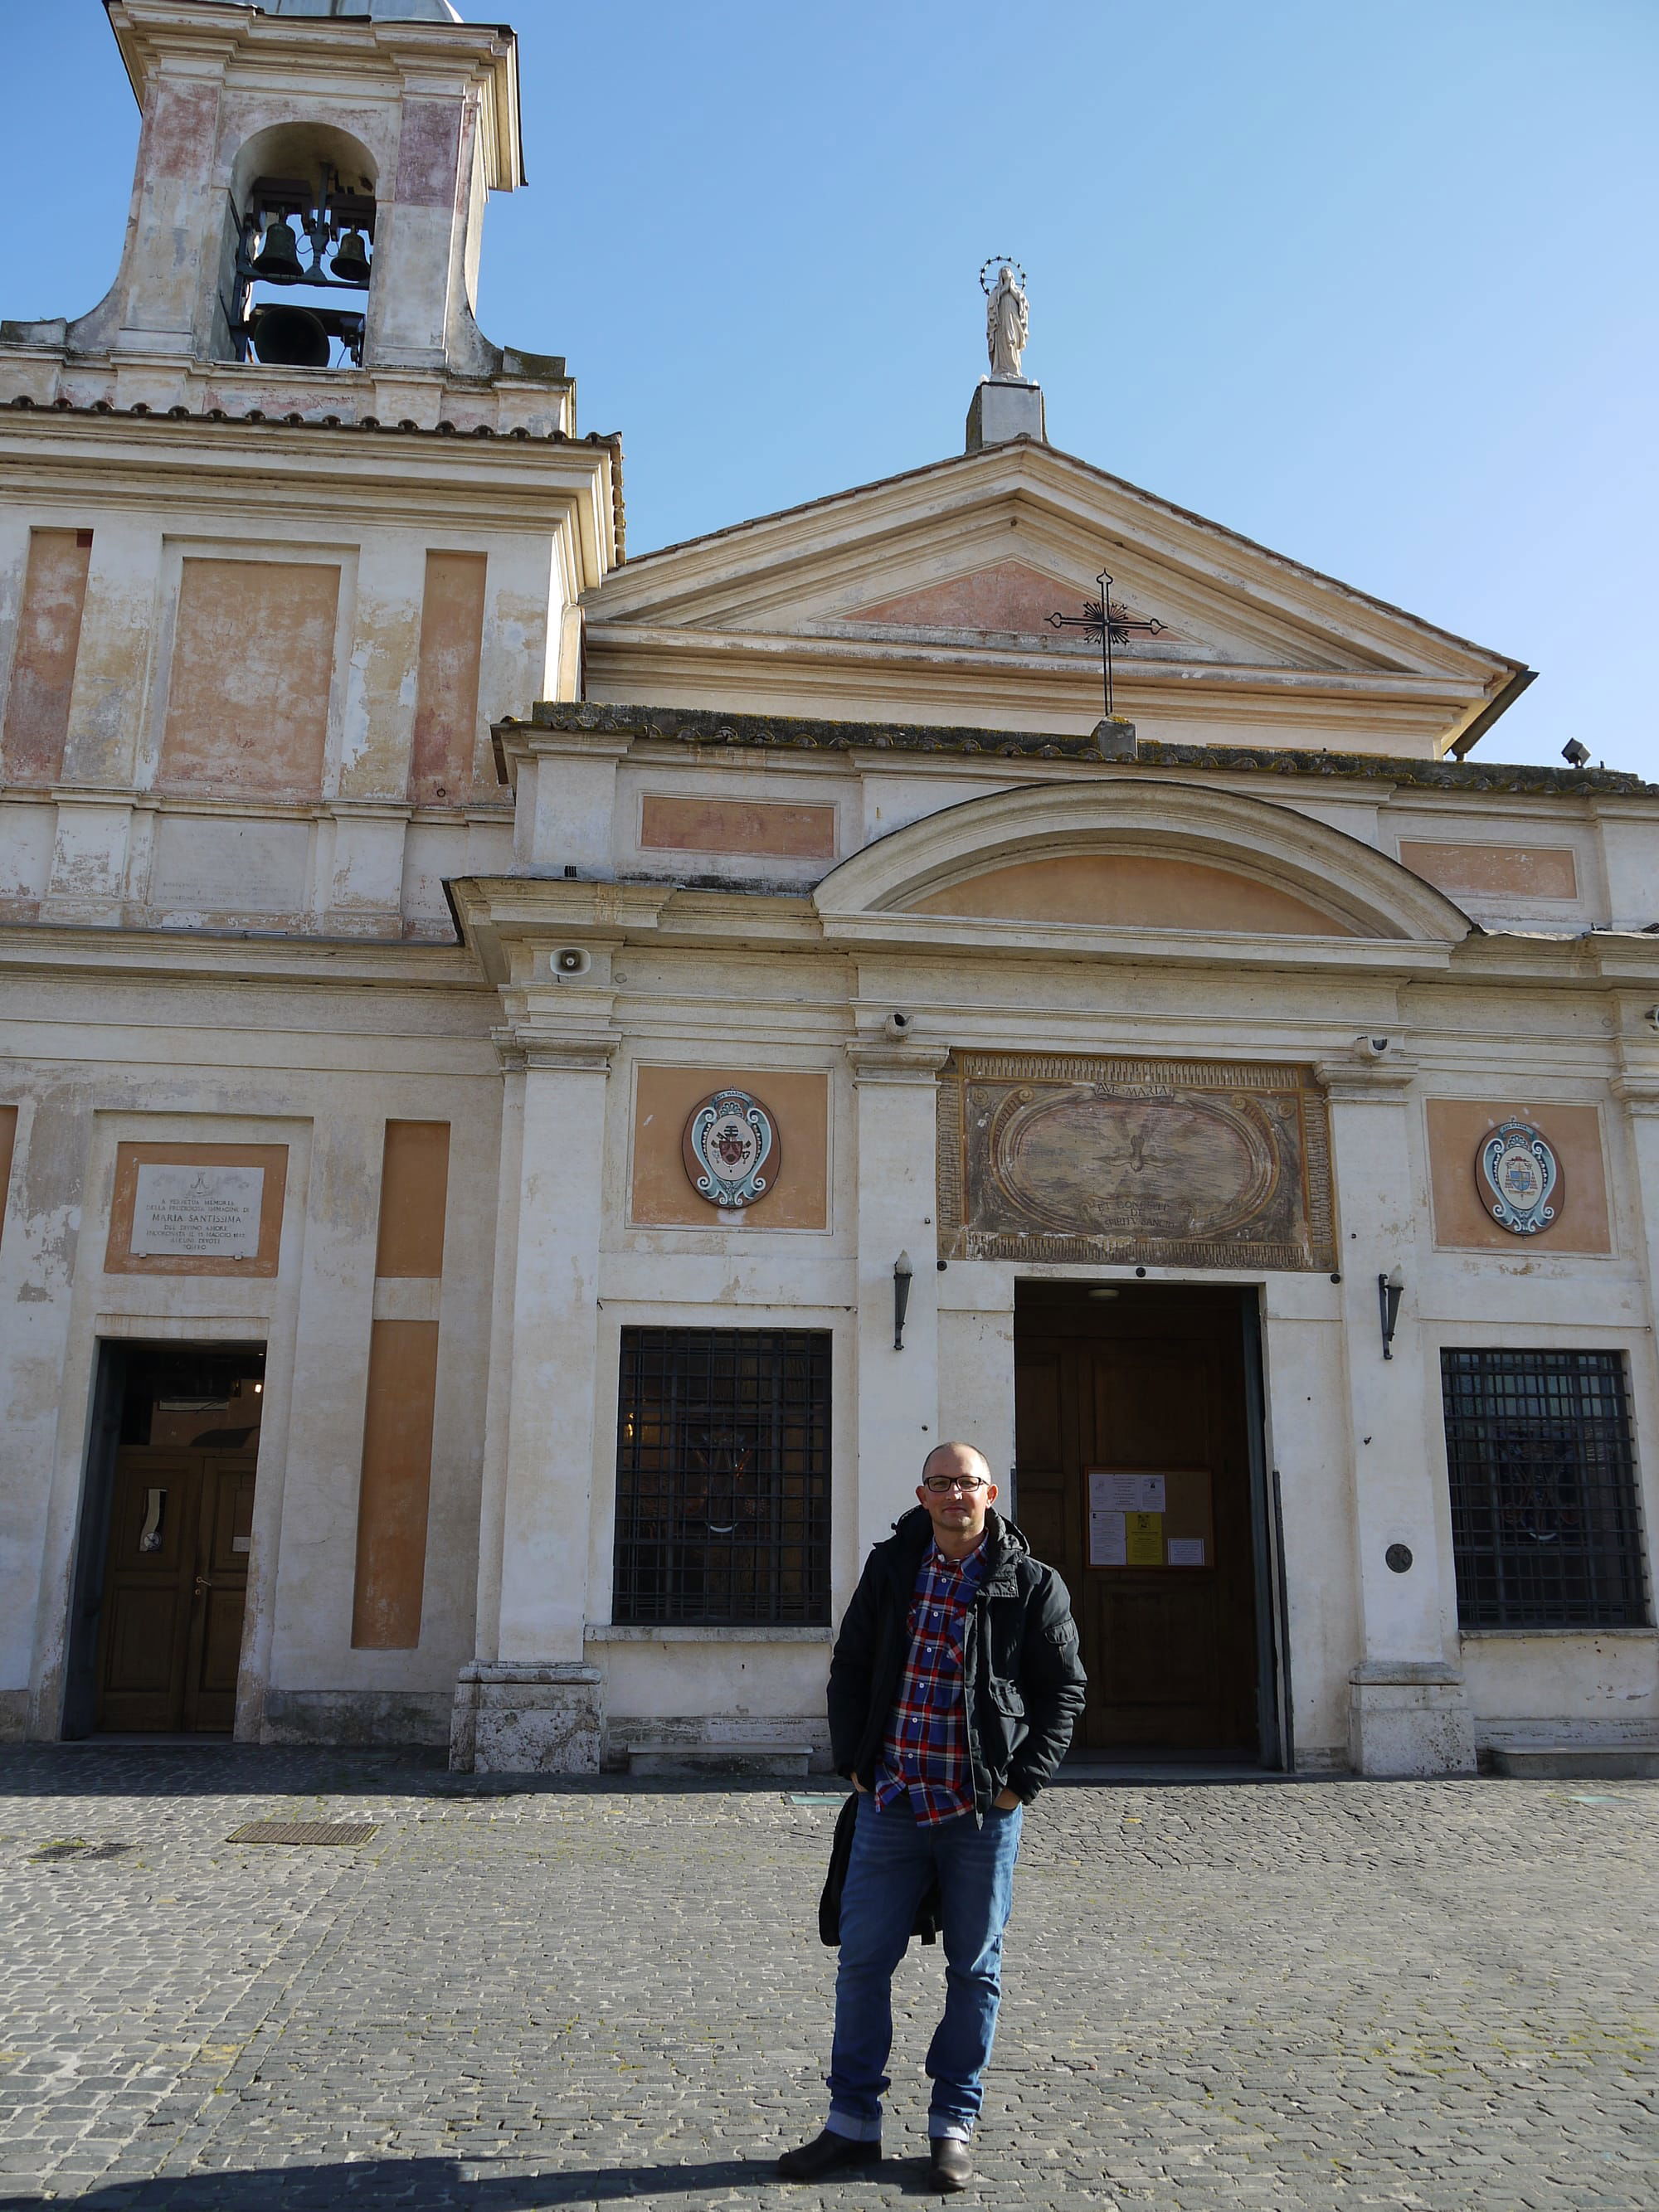 Sanktuarium Divino Amore - Miejsce łaski i cudów w Rzymie